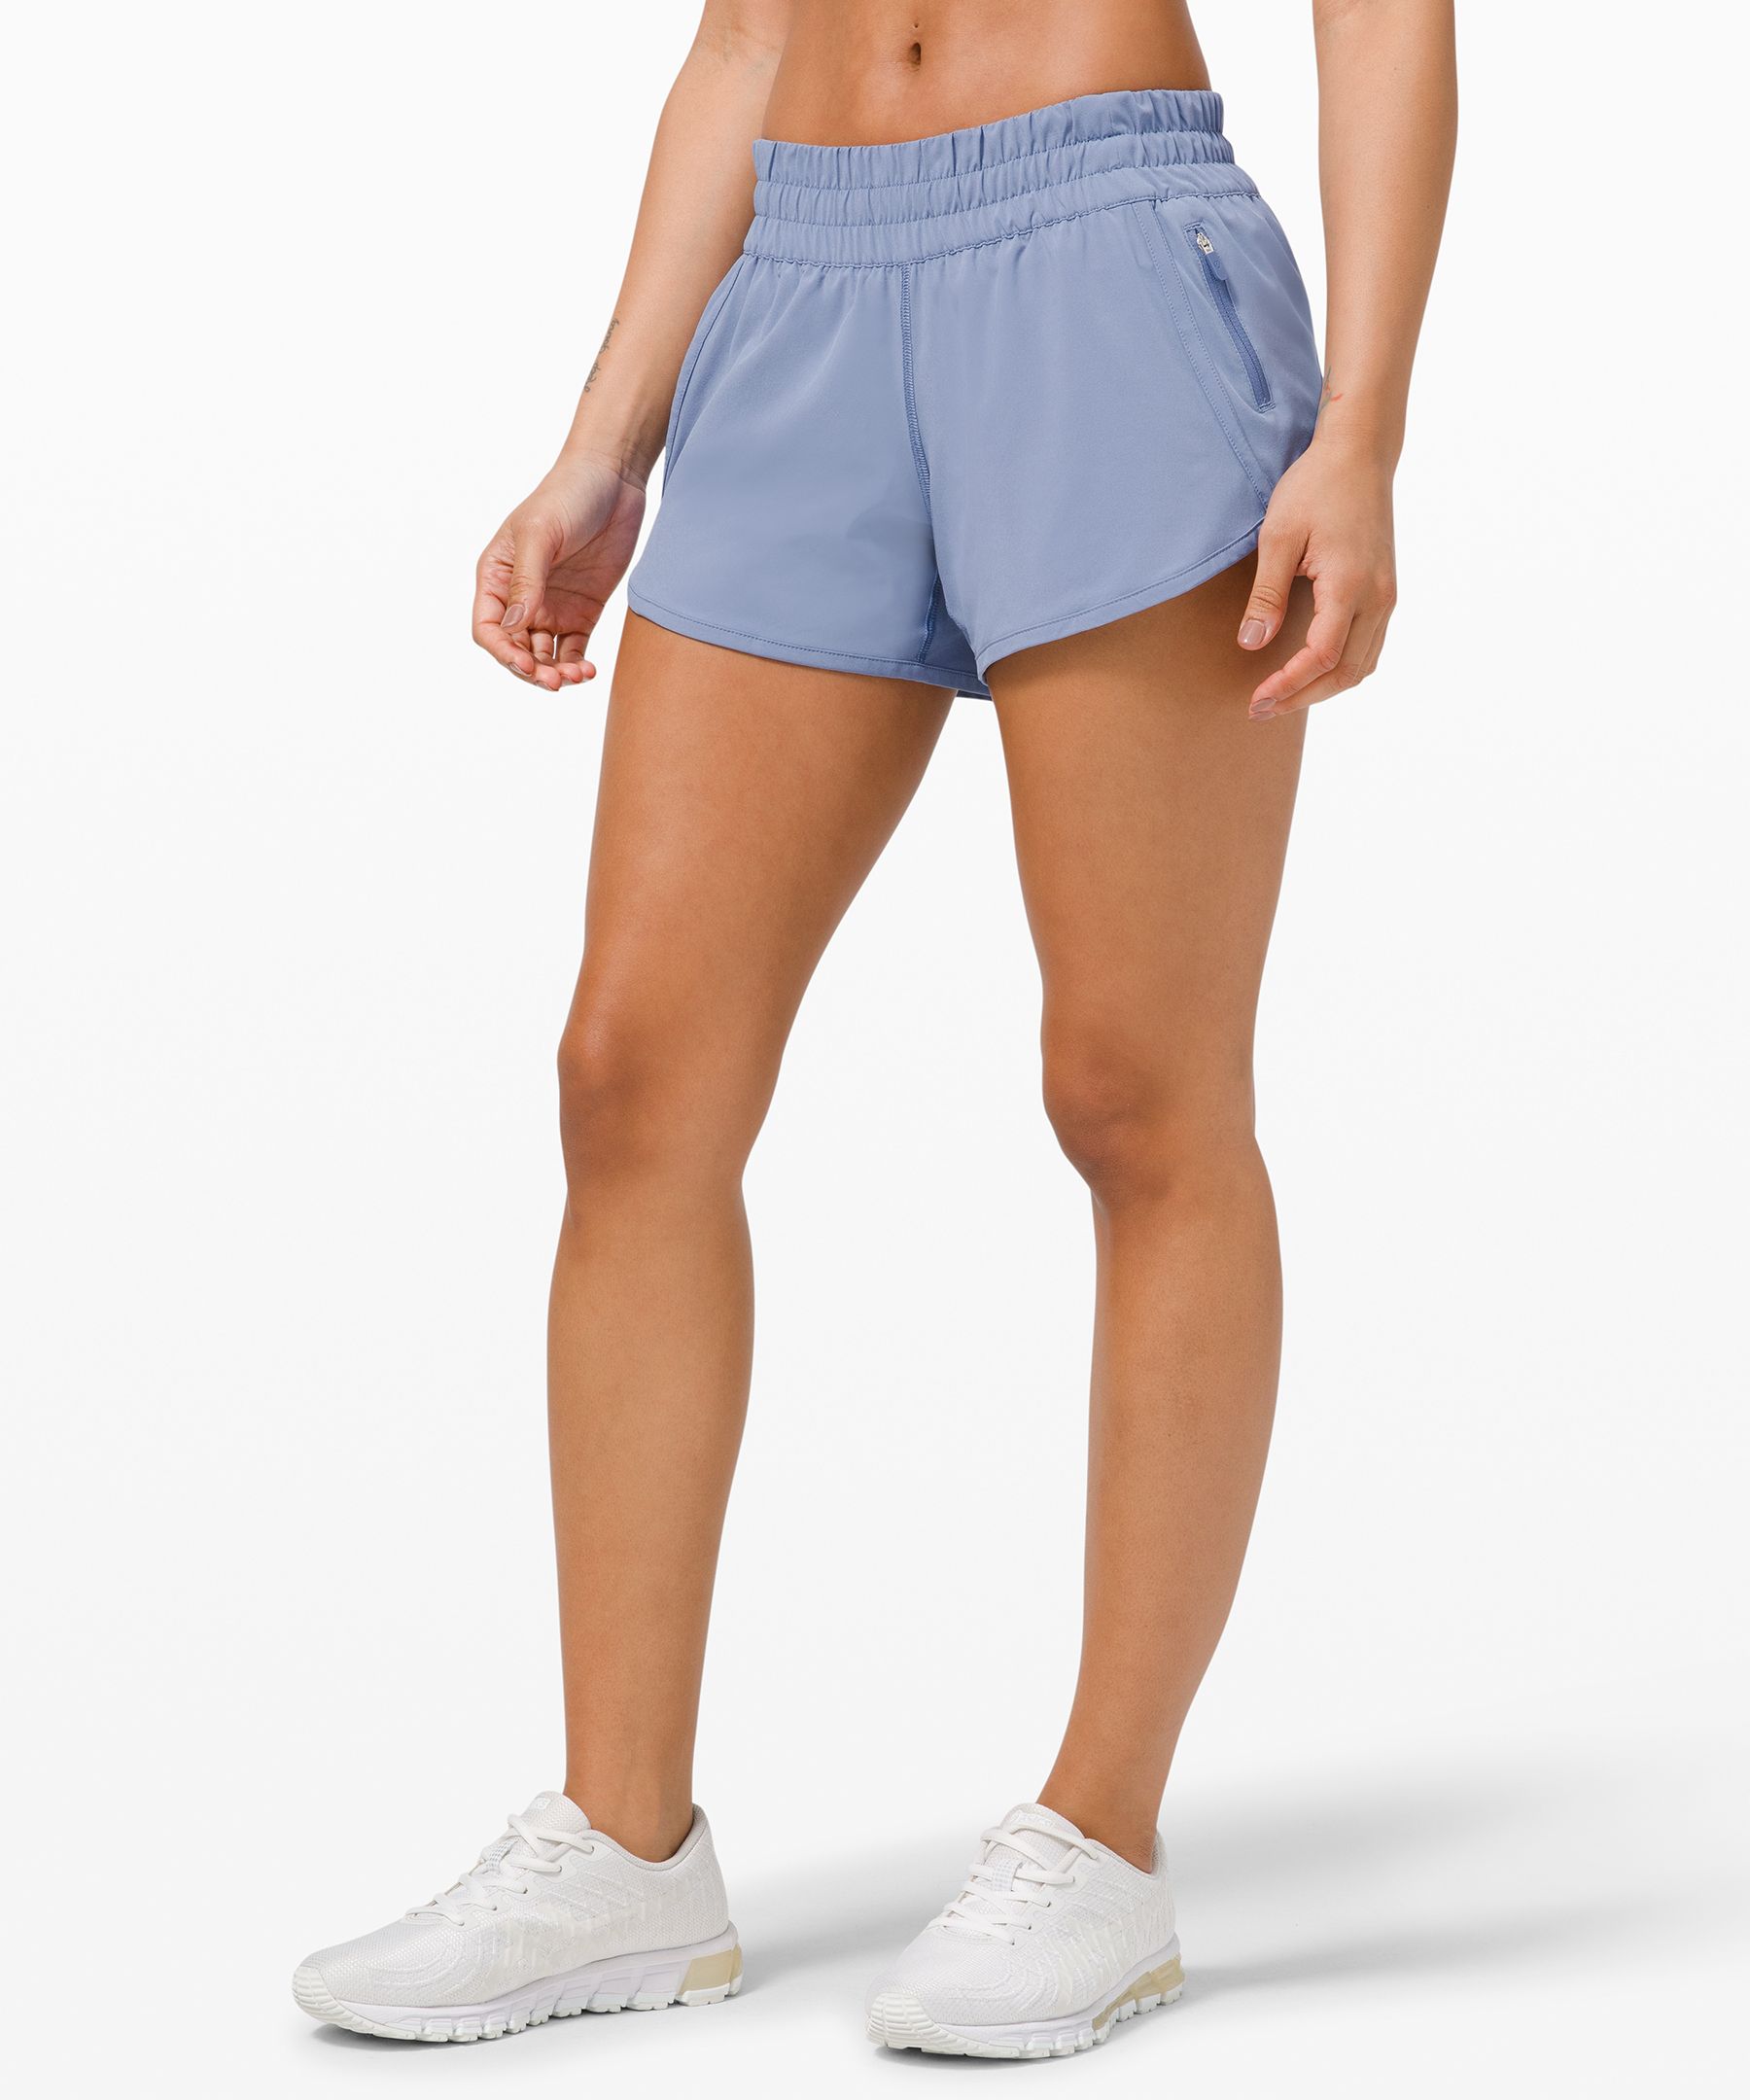 lululemon women's athletic shorts